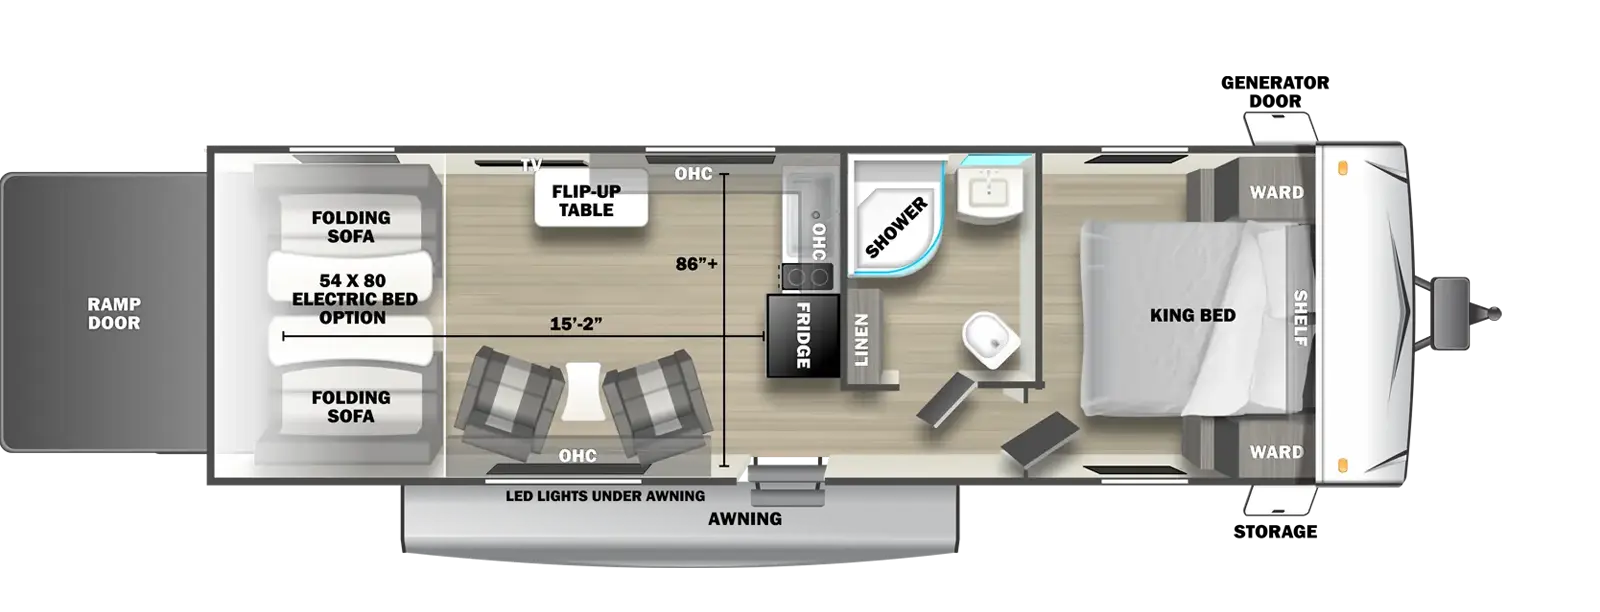 2750SLX Floorplan Image